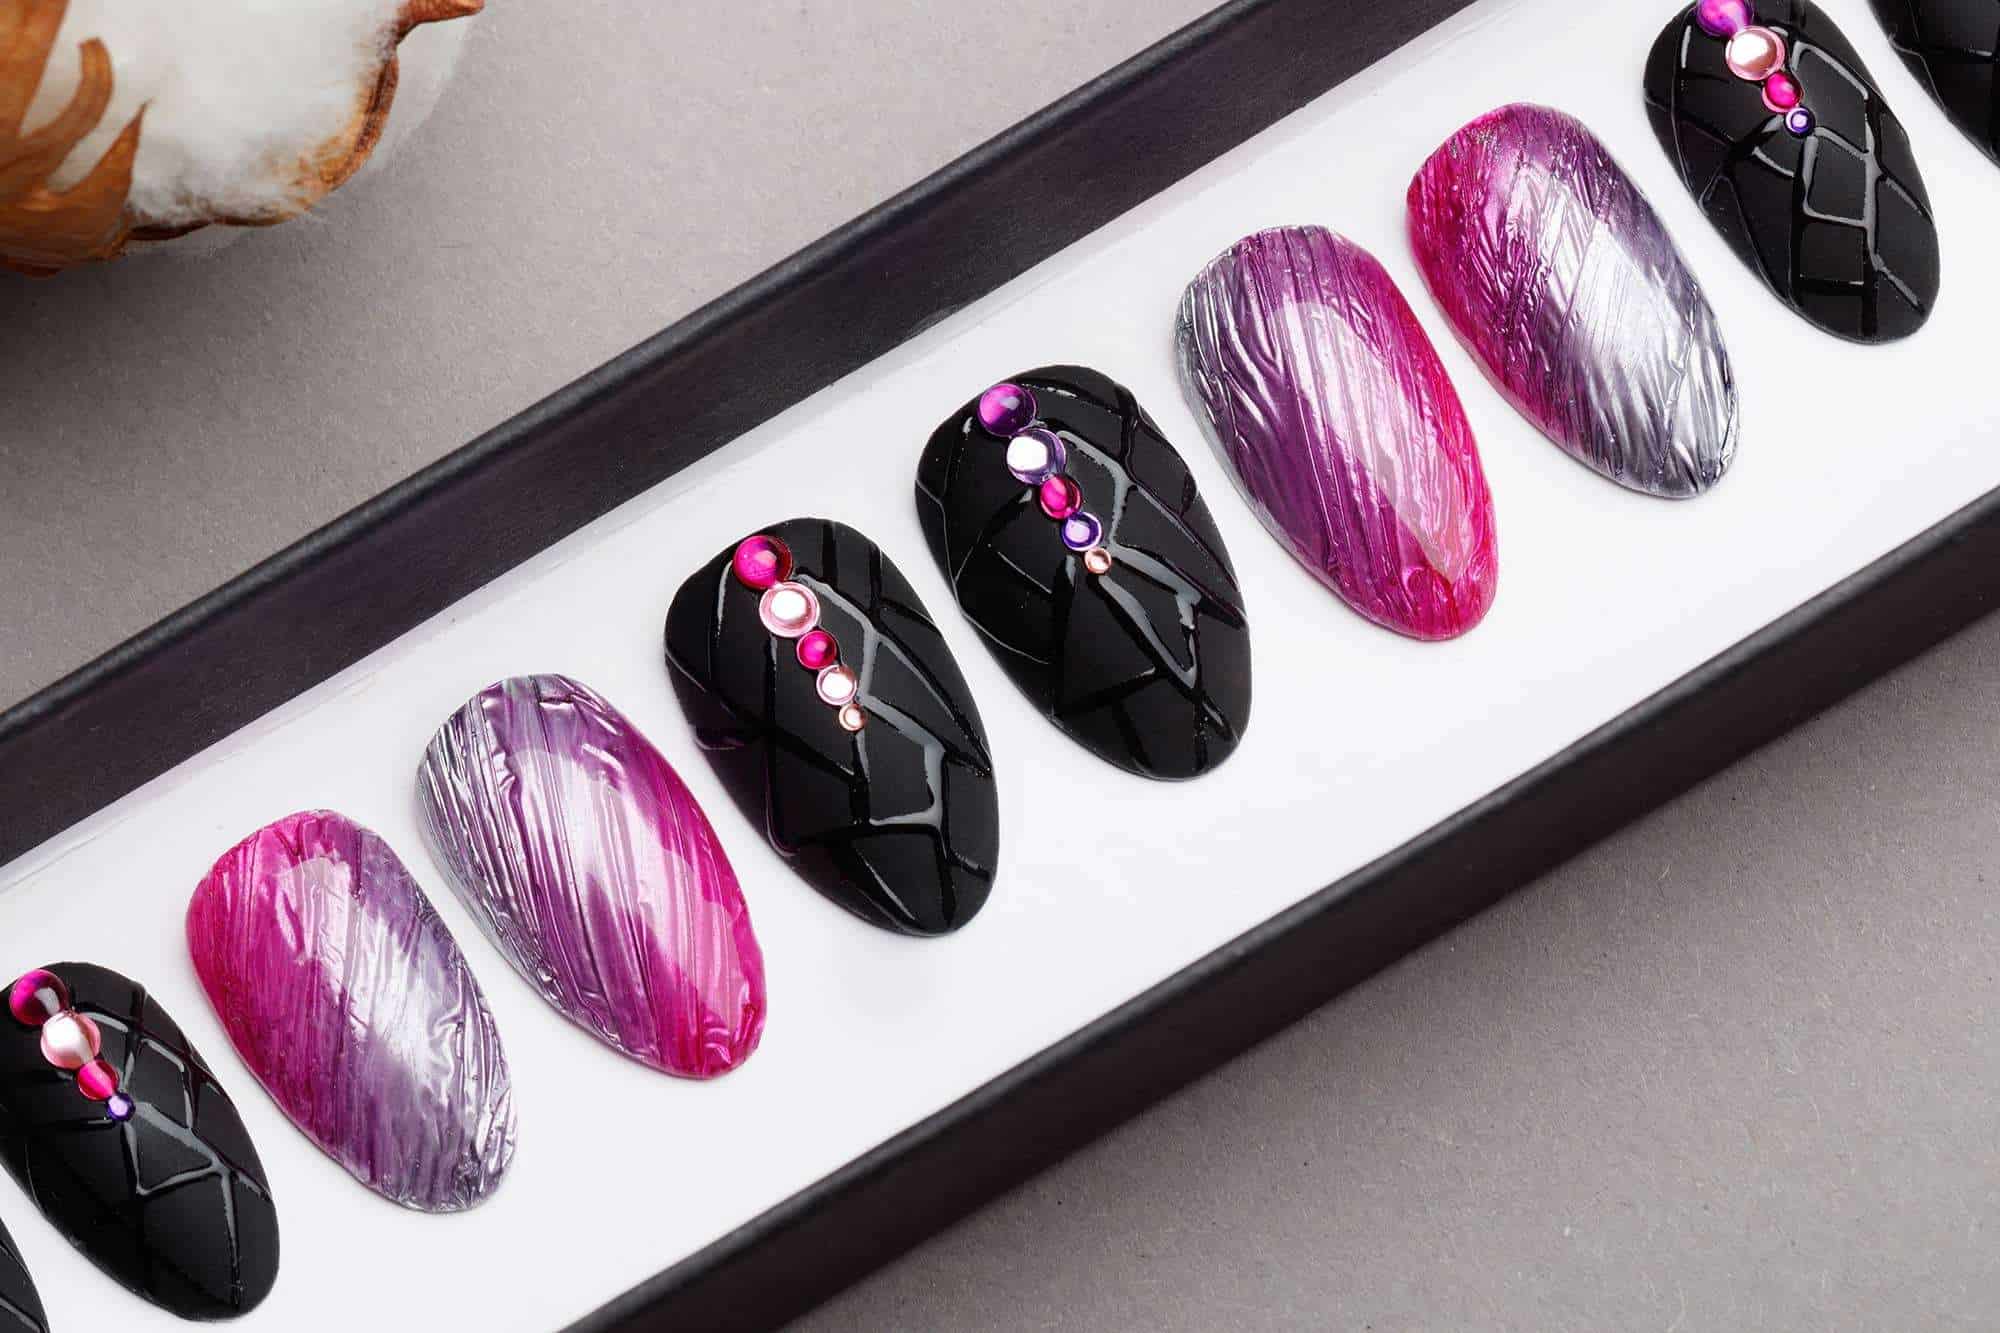 Amazing Texture Silver & Pink Press on Nails | Black Nails | Modern Nails | Hand painted Nail Art | Fake Nails | False Nails